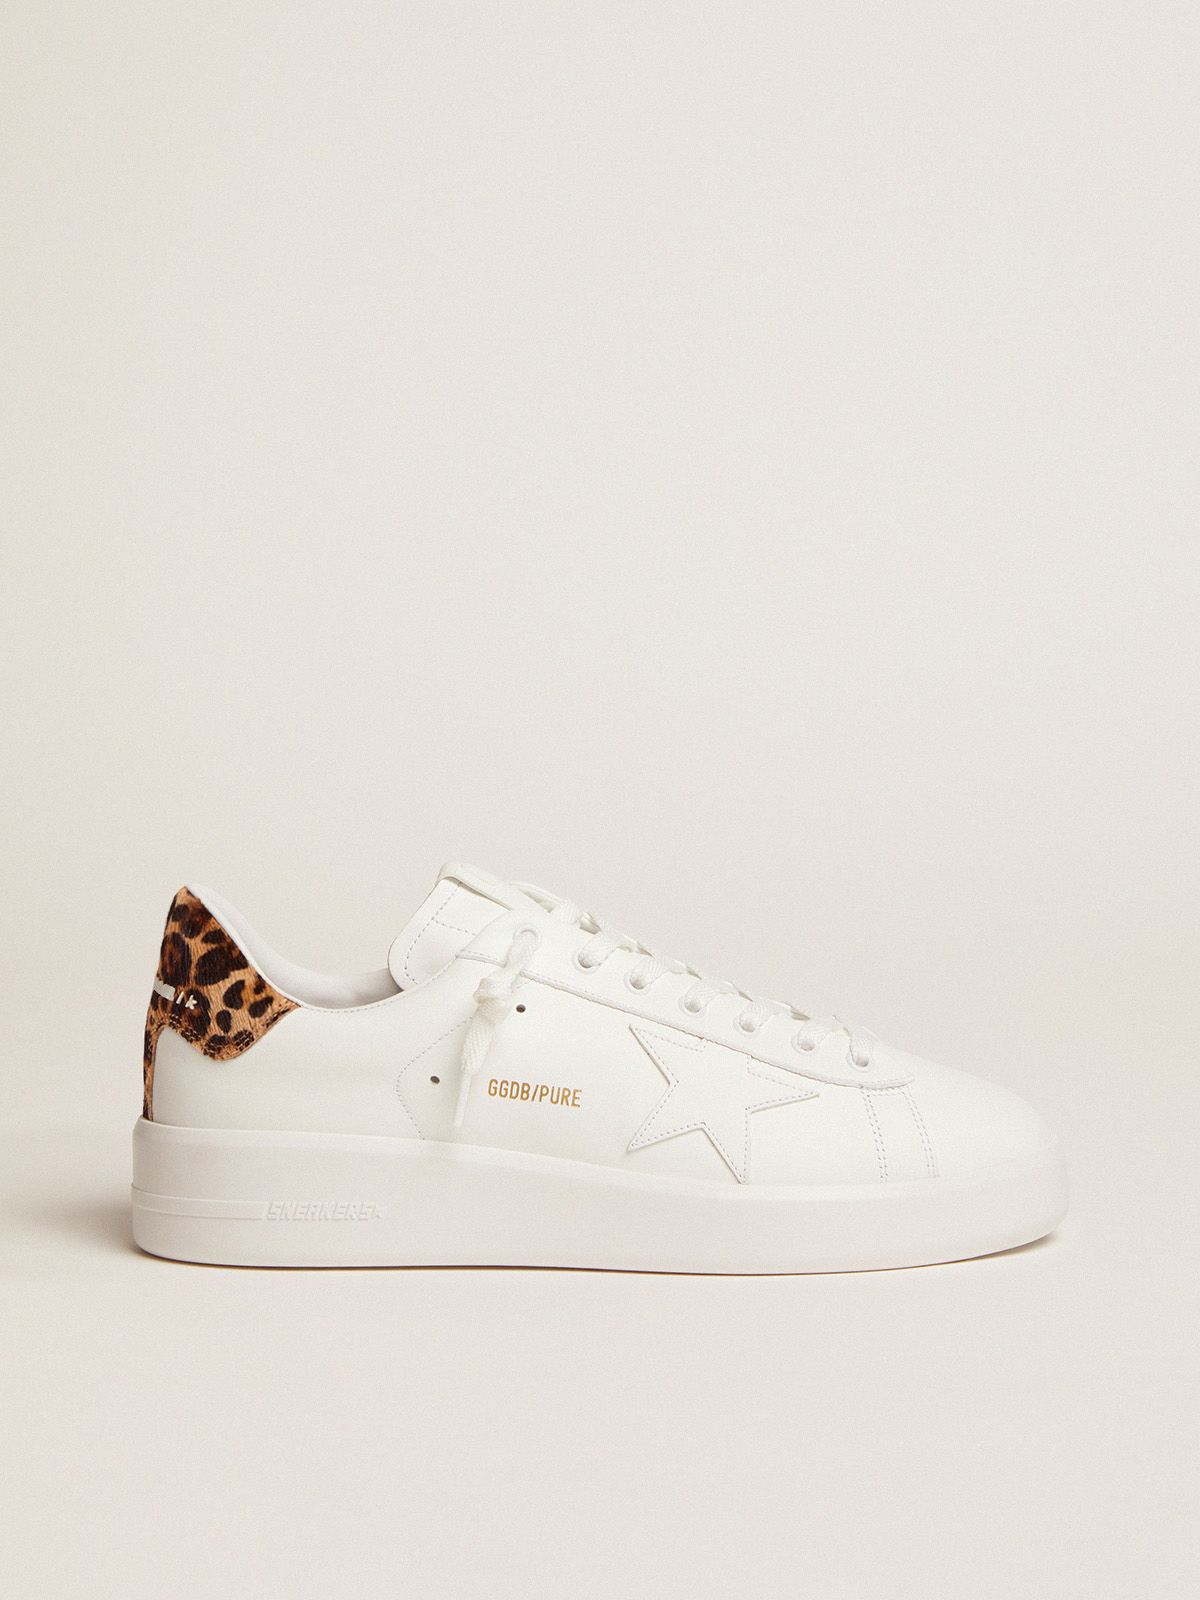 Sneakers Golden Goose Women’s Purestar sneakers with leopard-print heel tab